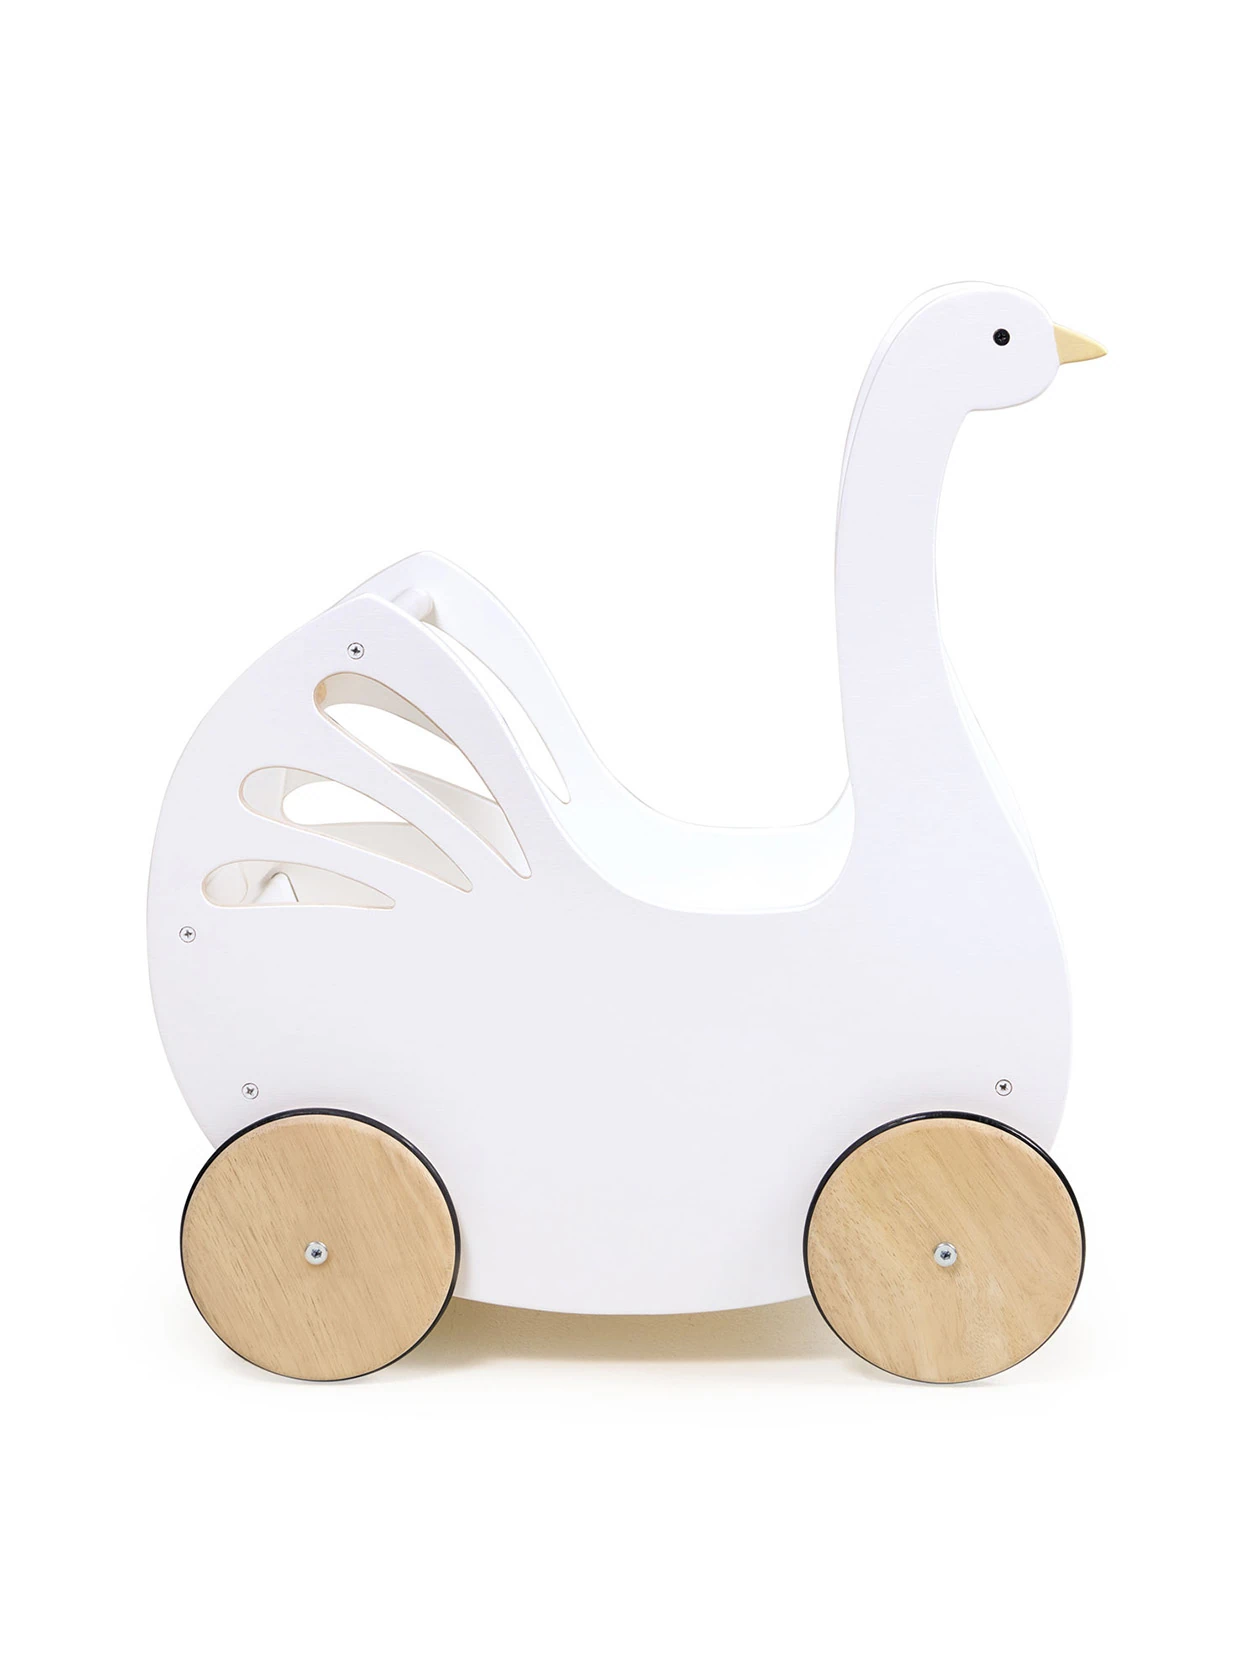 Drewniany wózek dla lalek z akcesoriami - Łabędź od Tender Leaf Toys na wprost na białym tle.